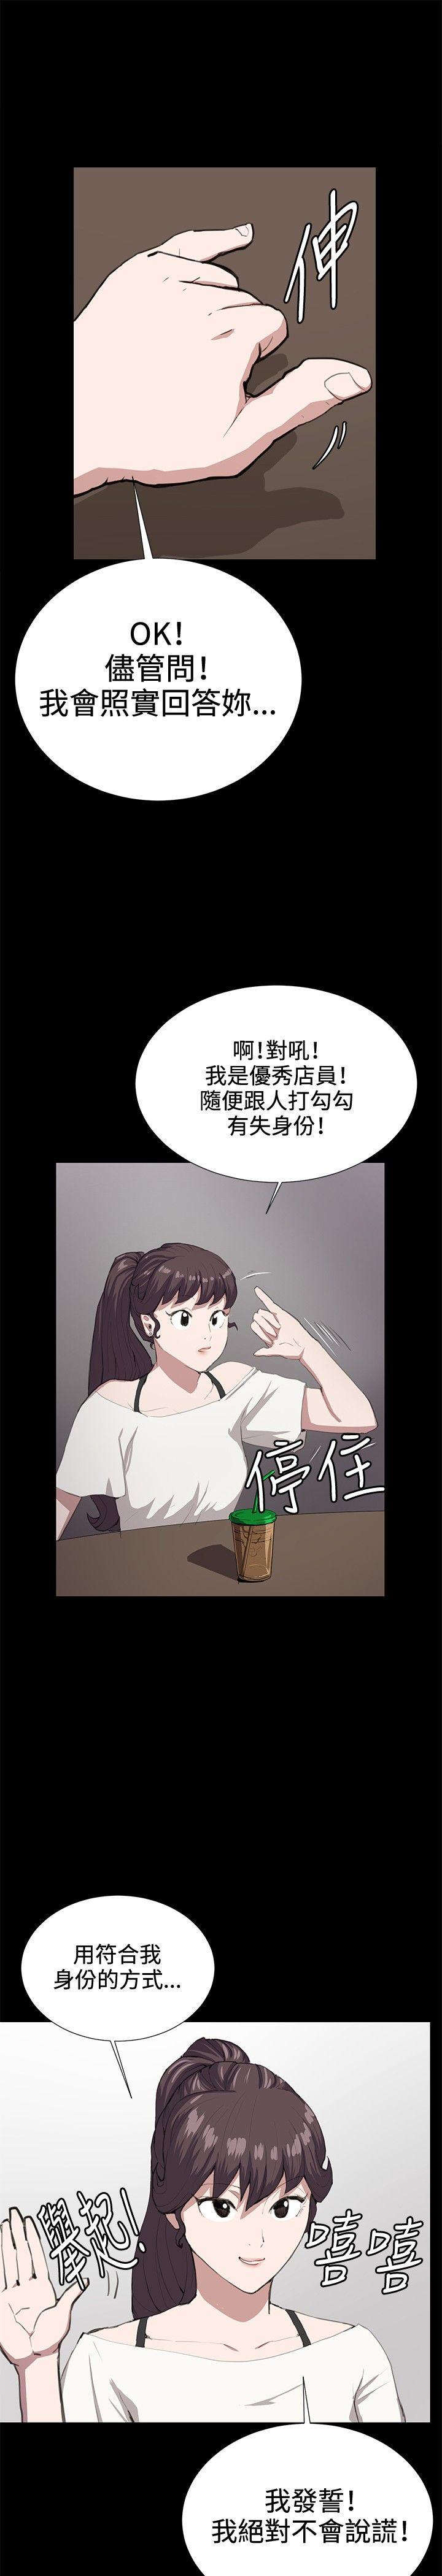 韩国污漫画 深夜便利店 第26话 24